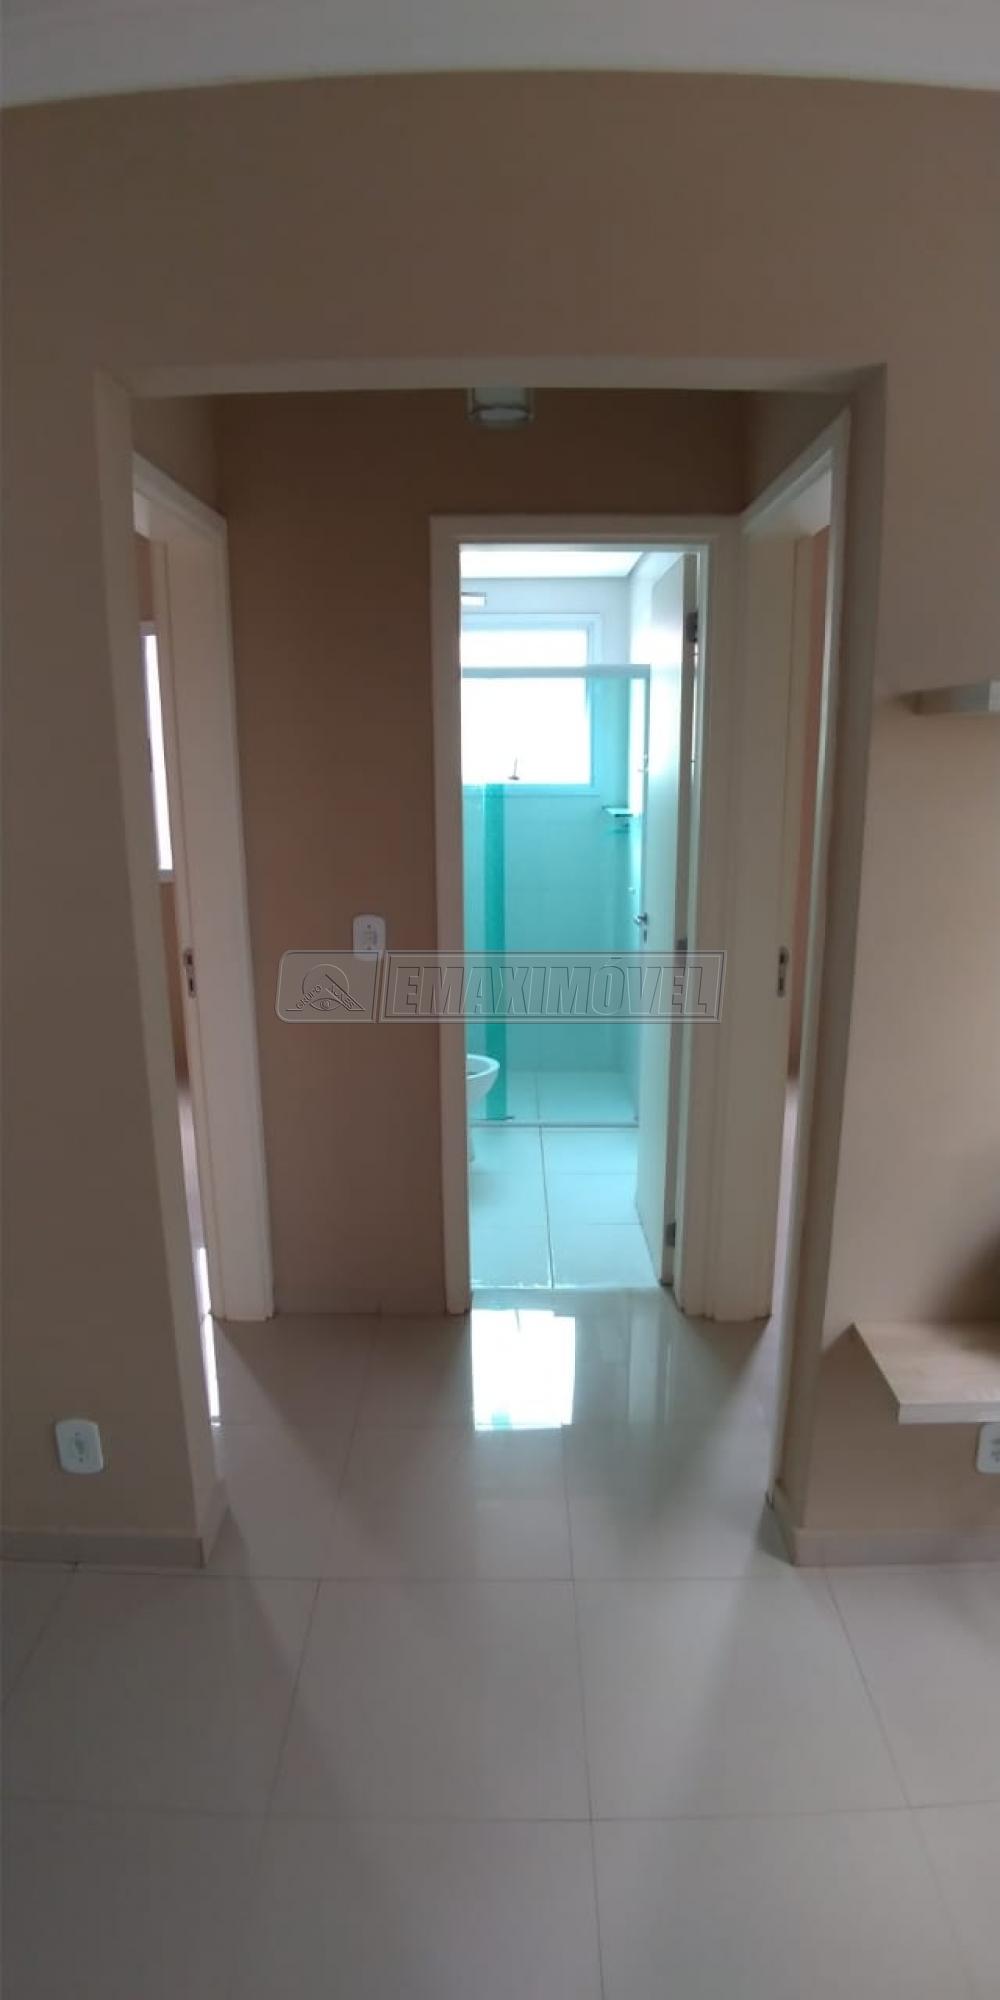 Comprar Apartamento / Padrão em Sorocaba R$ 180.000,00 - Foto 11